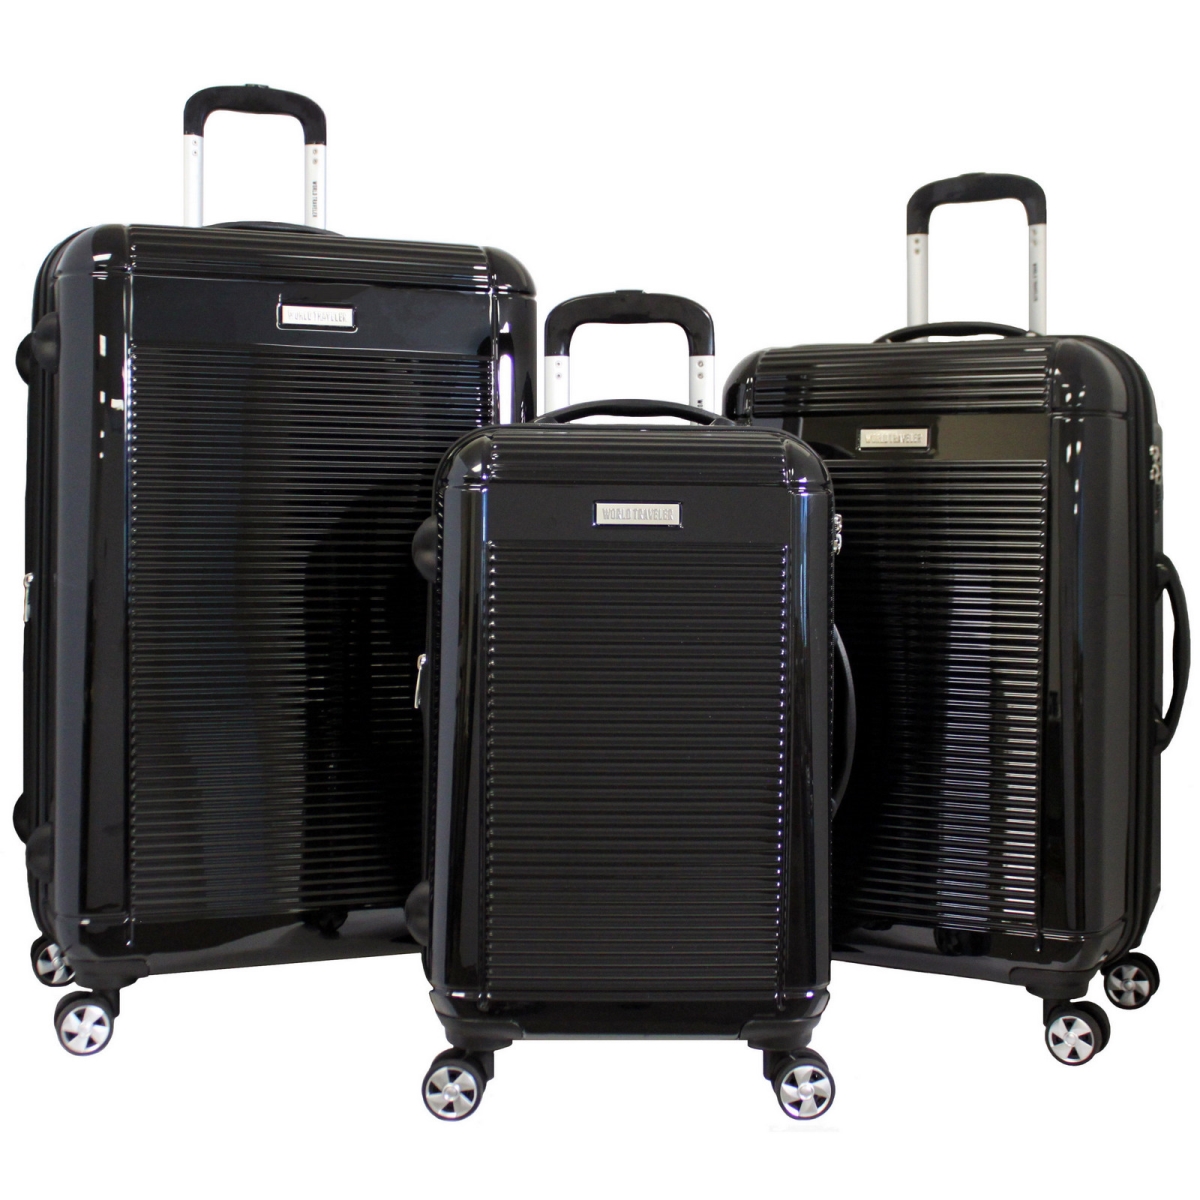 Wt4000-black Regal Hardside Lightweight Spinner Luggage Set - Black, 3 Piece